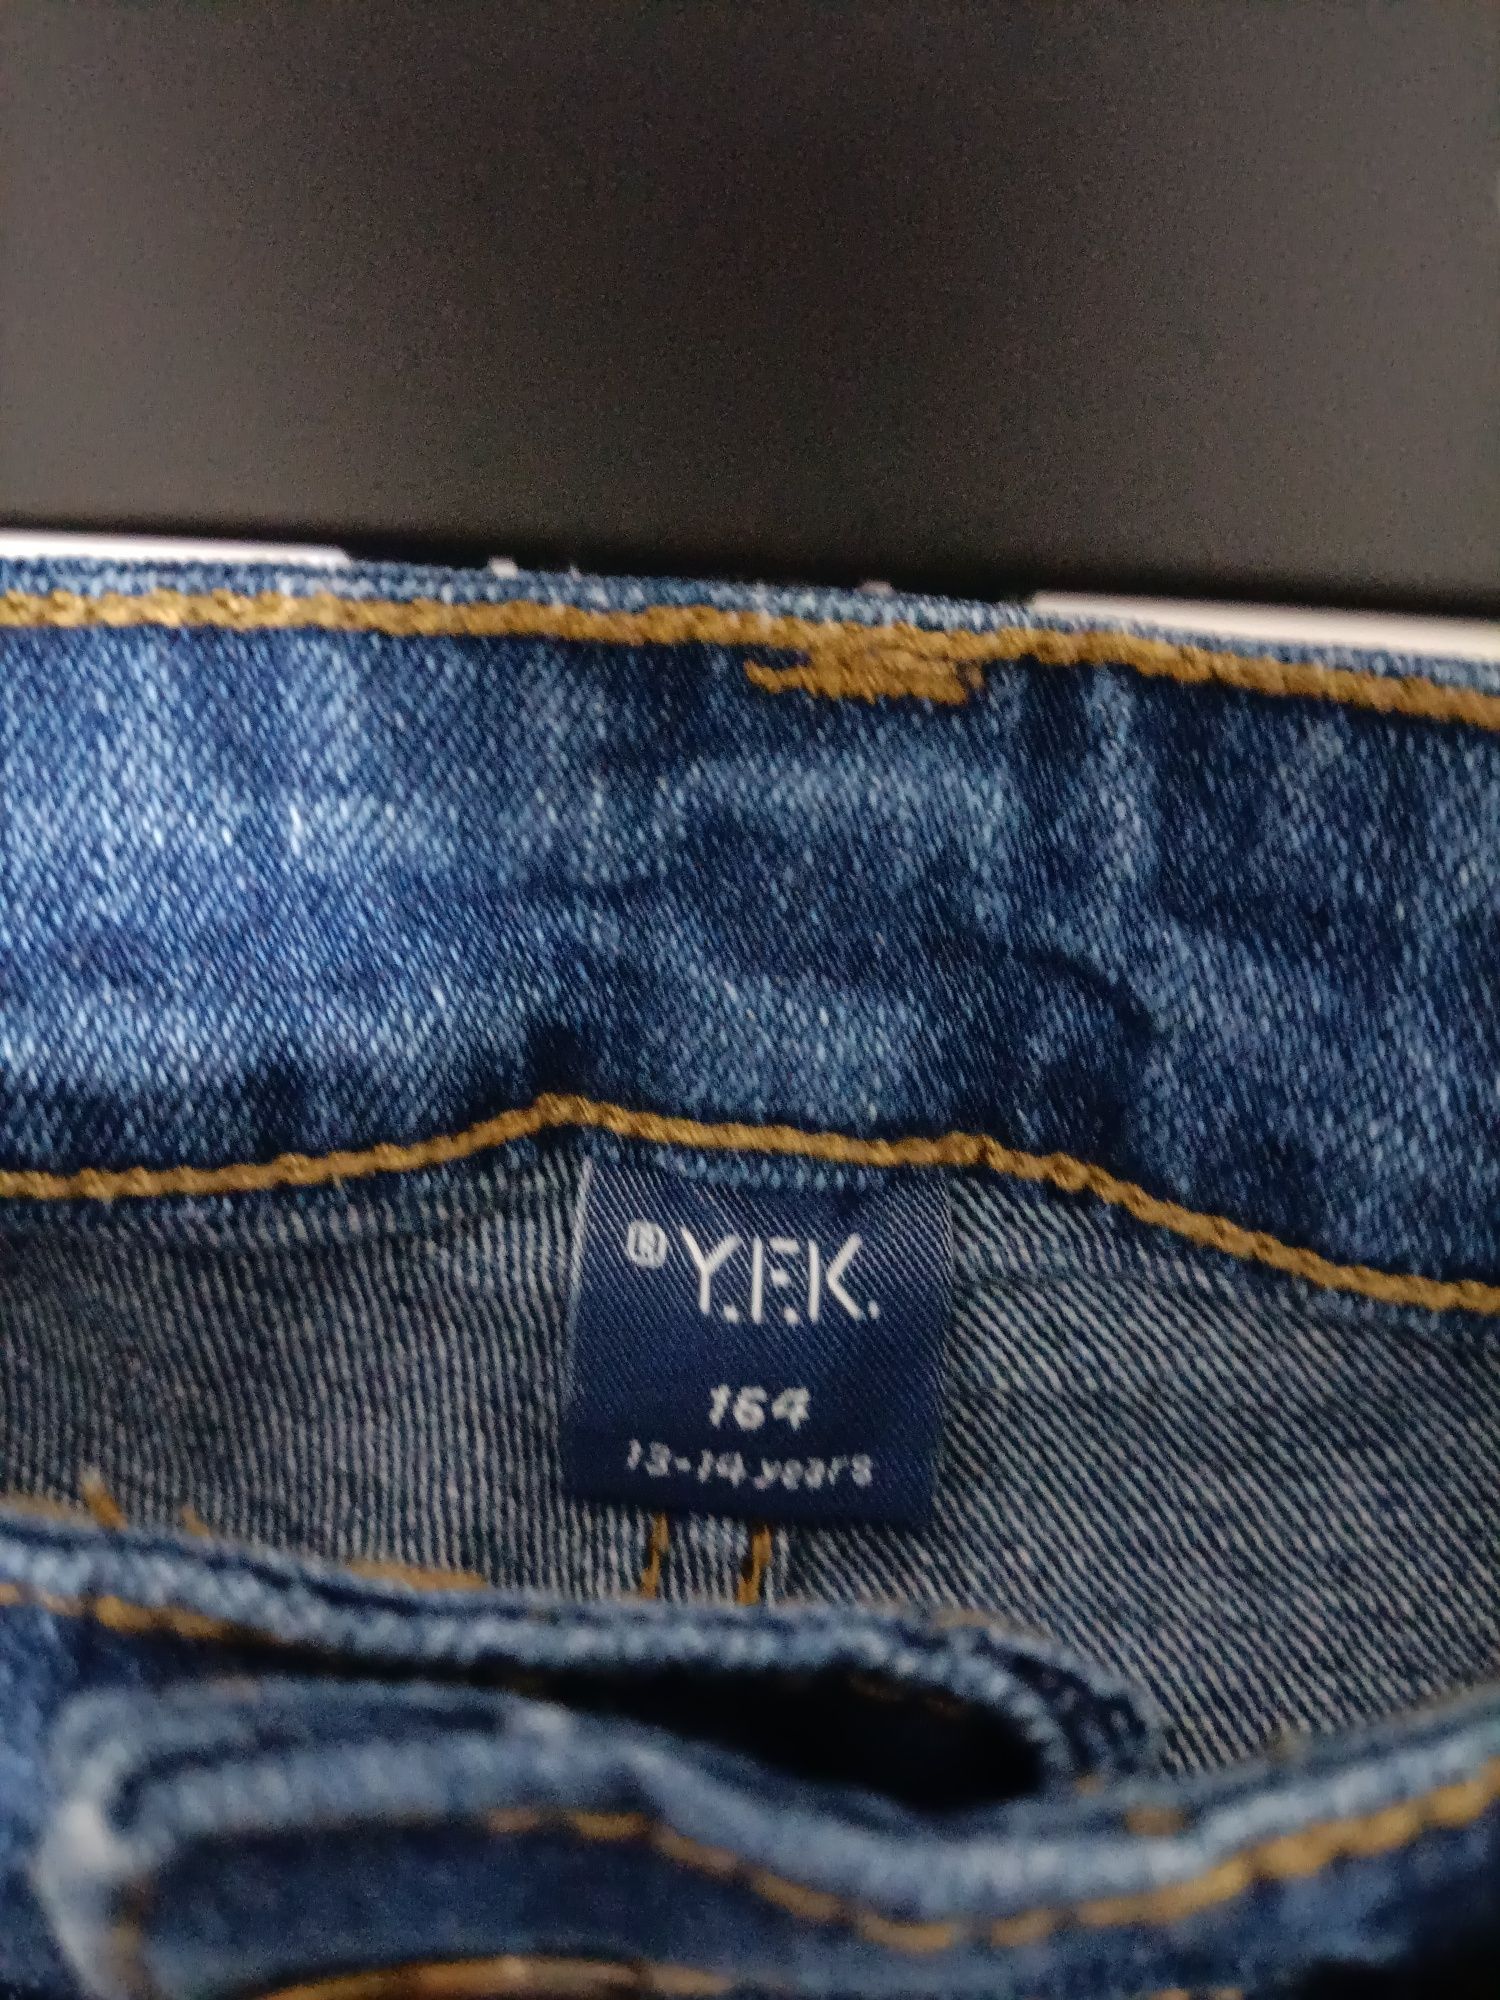 Jeansy młodzieżowe Y.F.K. 164 cm